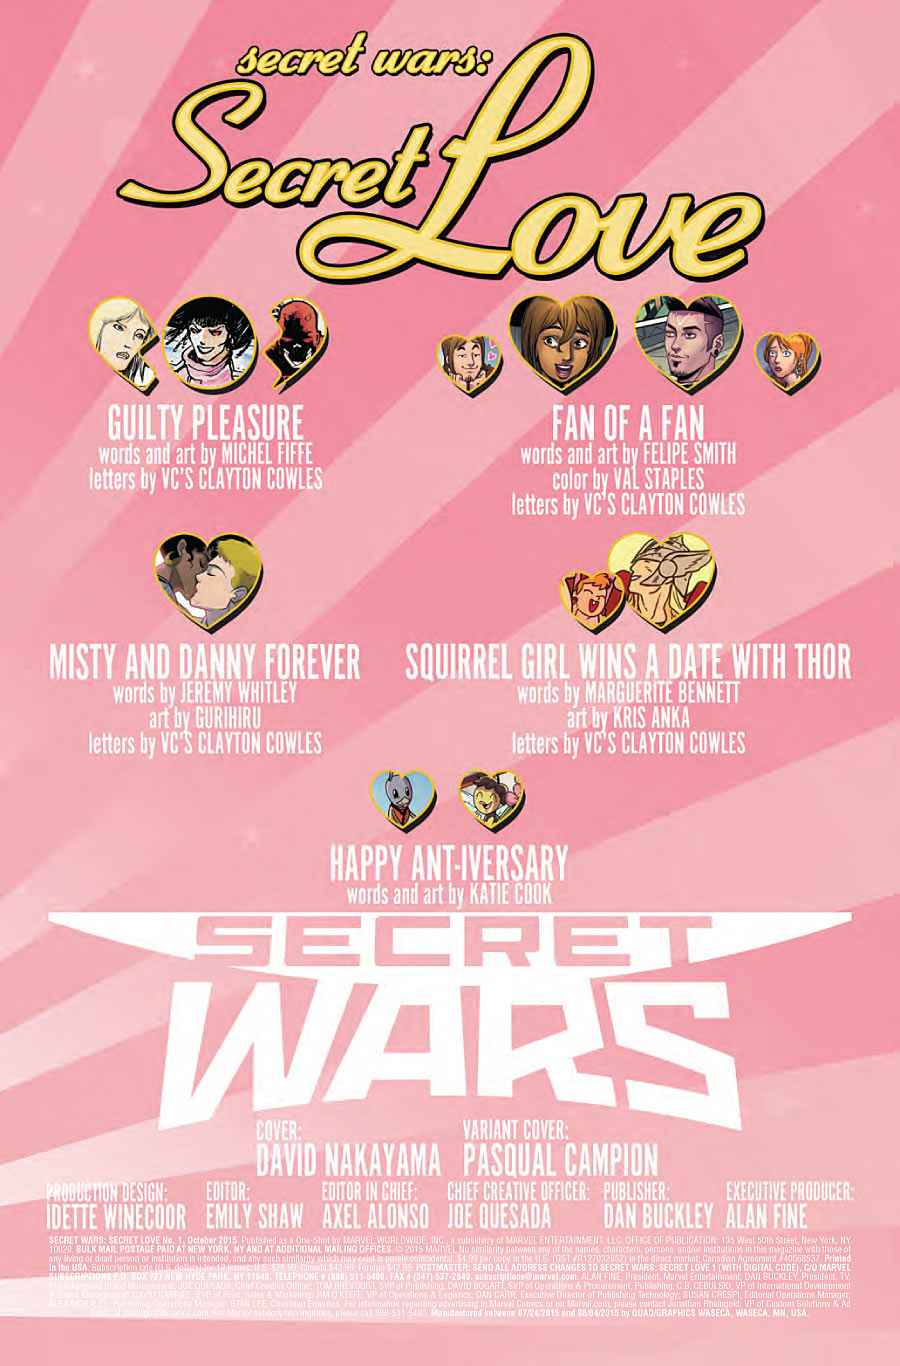 Secret Wars: Secret Love